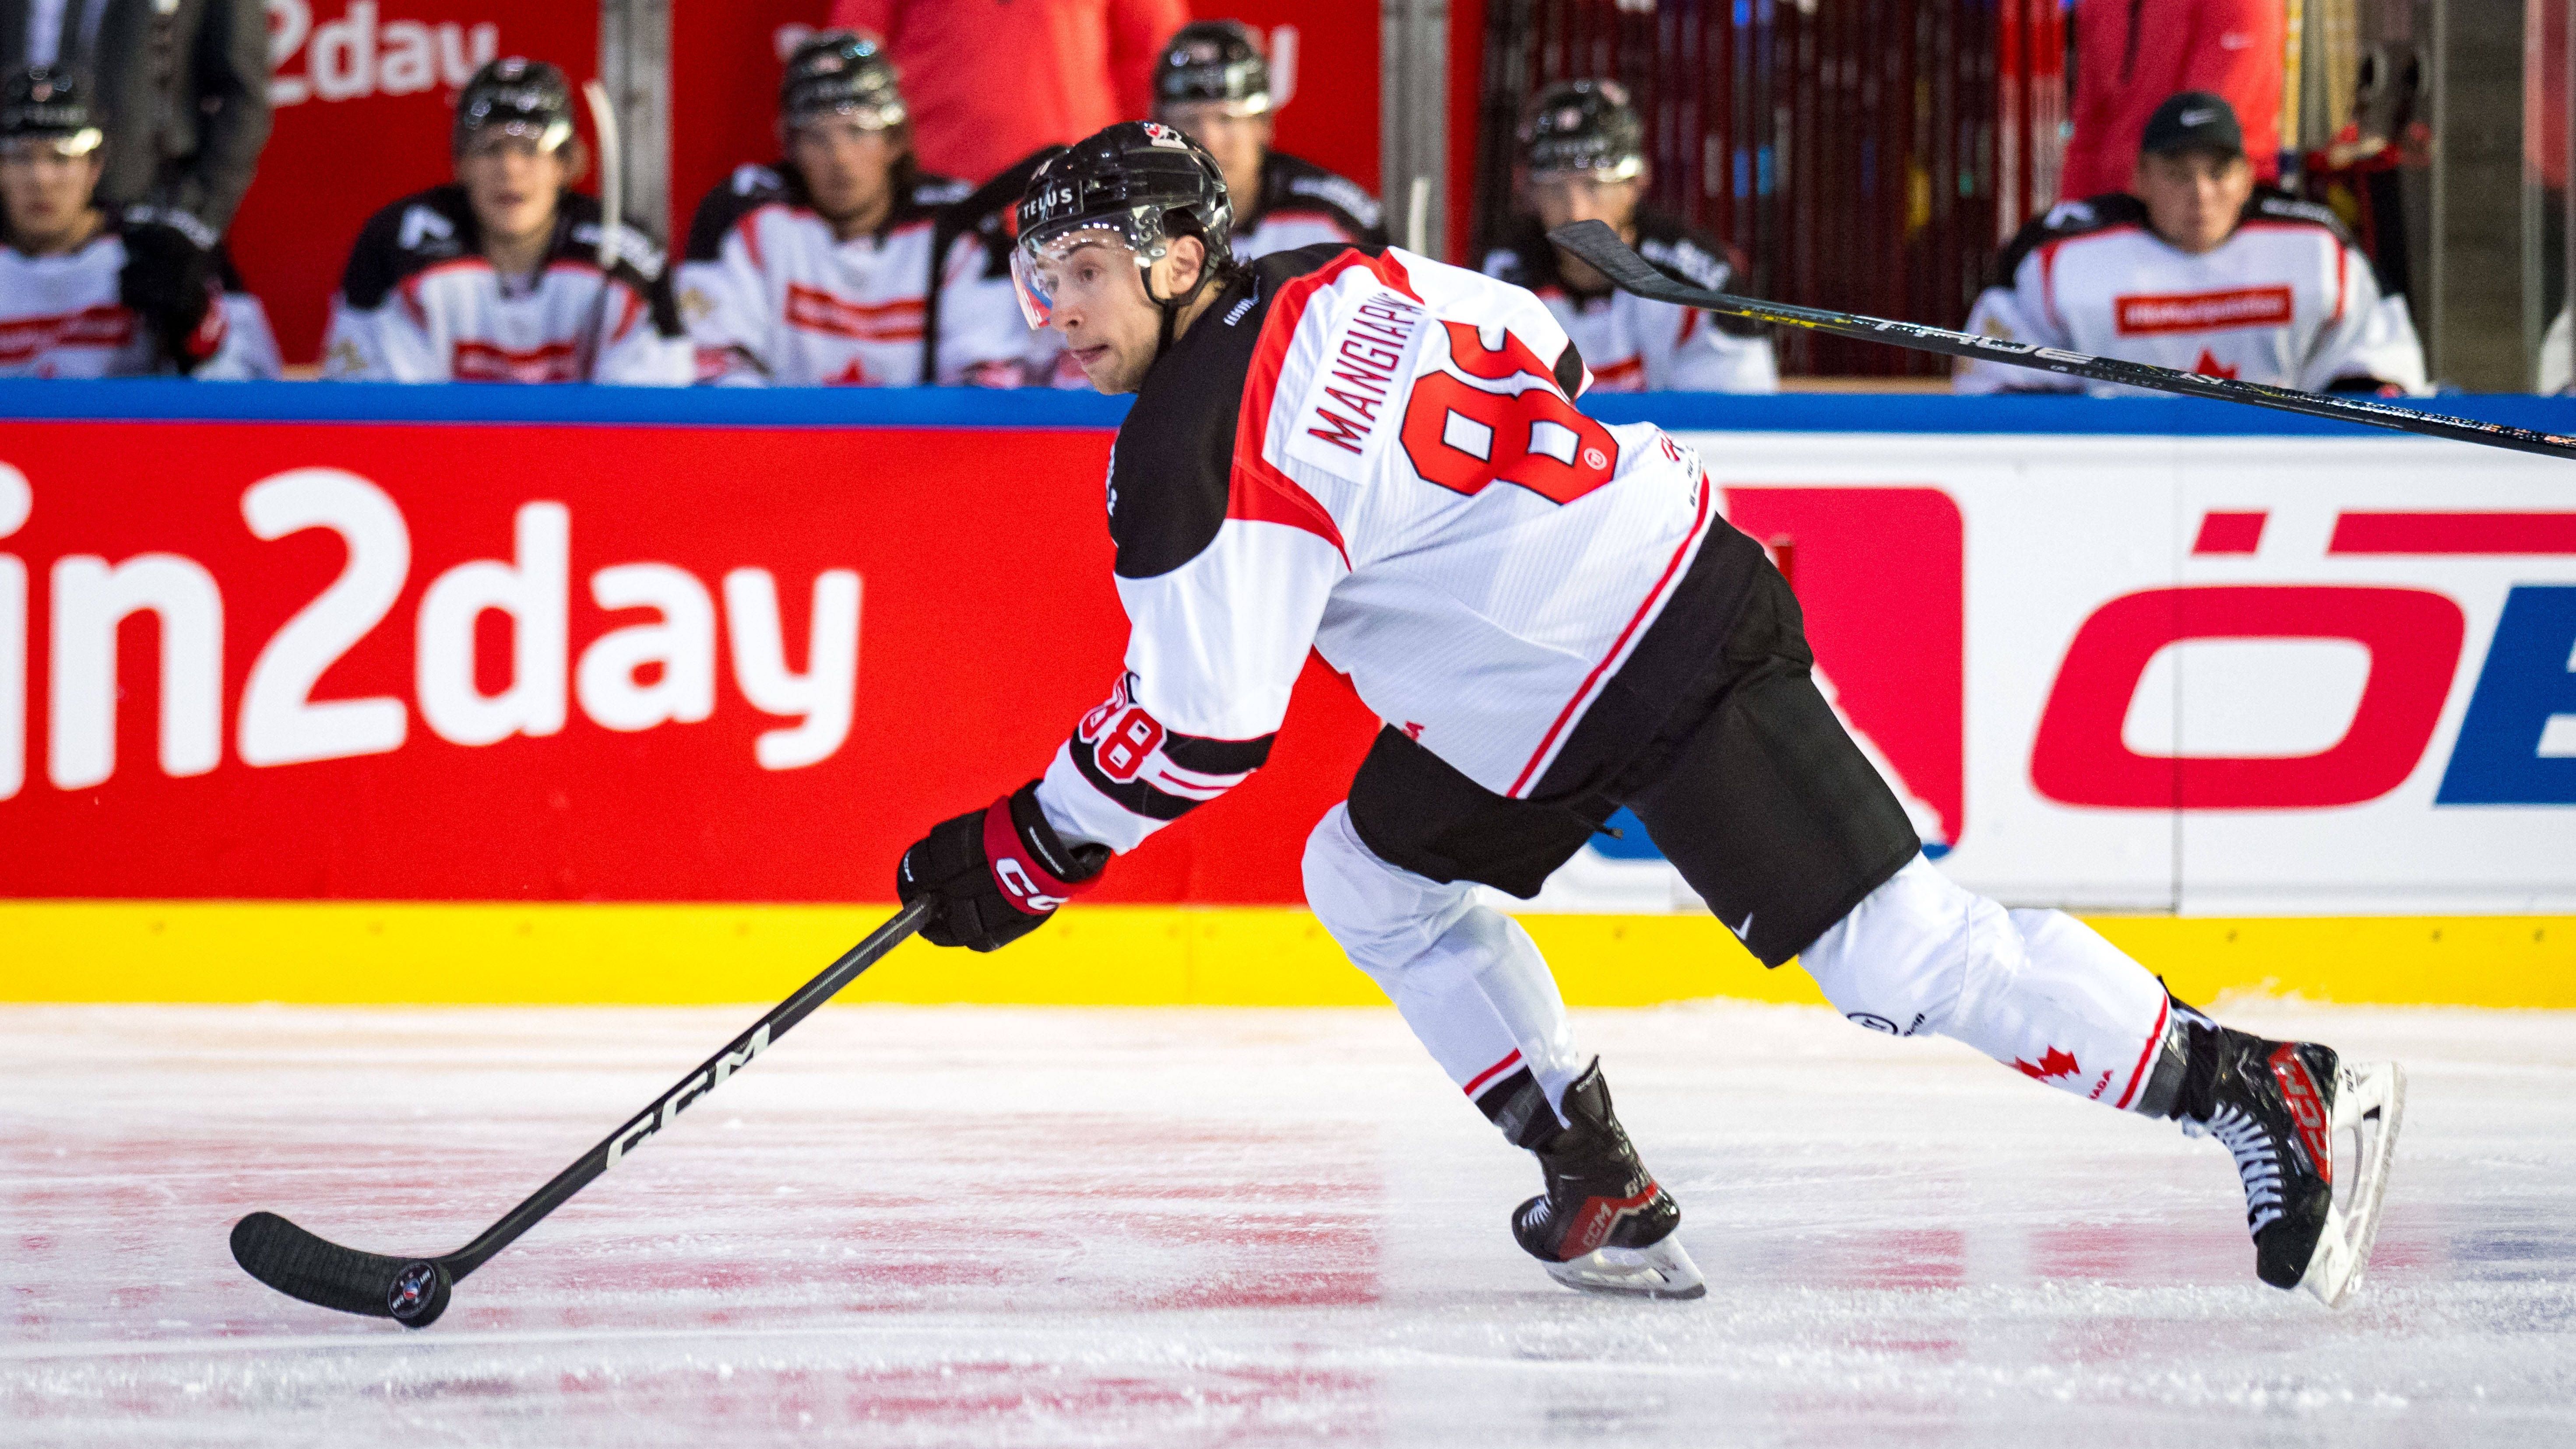 <strong>Kanada: Andrew Mangiapane (Calgary Flames)</strong><br>Der MVP der WM 2021 verstärkt Team Canada. Bei den Titelsielen 2021 stieß er erst im vierten Spiel zum Team. Nach zu Beginn drei Niederlagen gewannen die Kanadier im Anschluss alles - auch weil Mangiapane in 7 Spielen 7 Tore erzielte und dazu noch 4 vorbereitete.